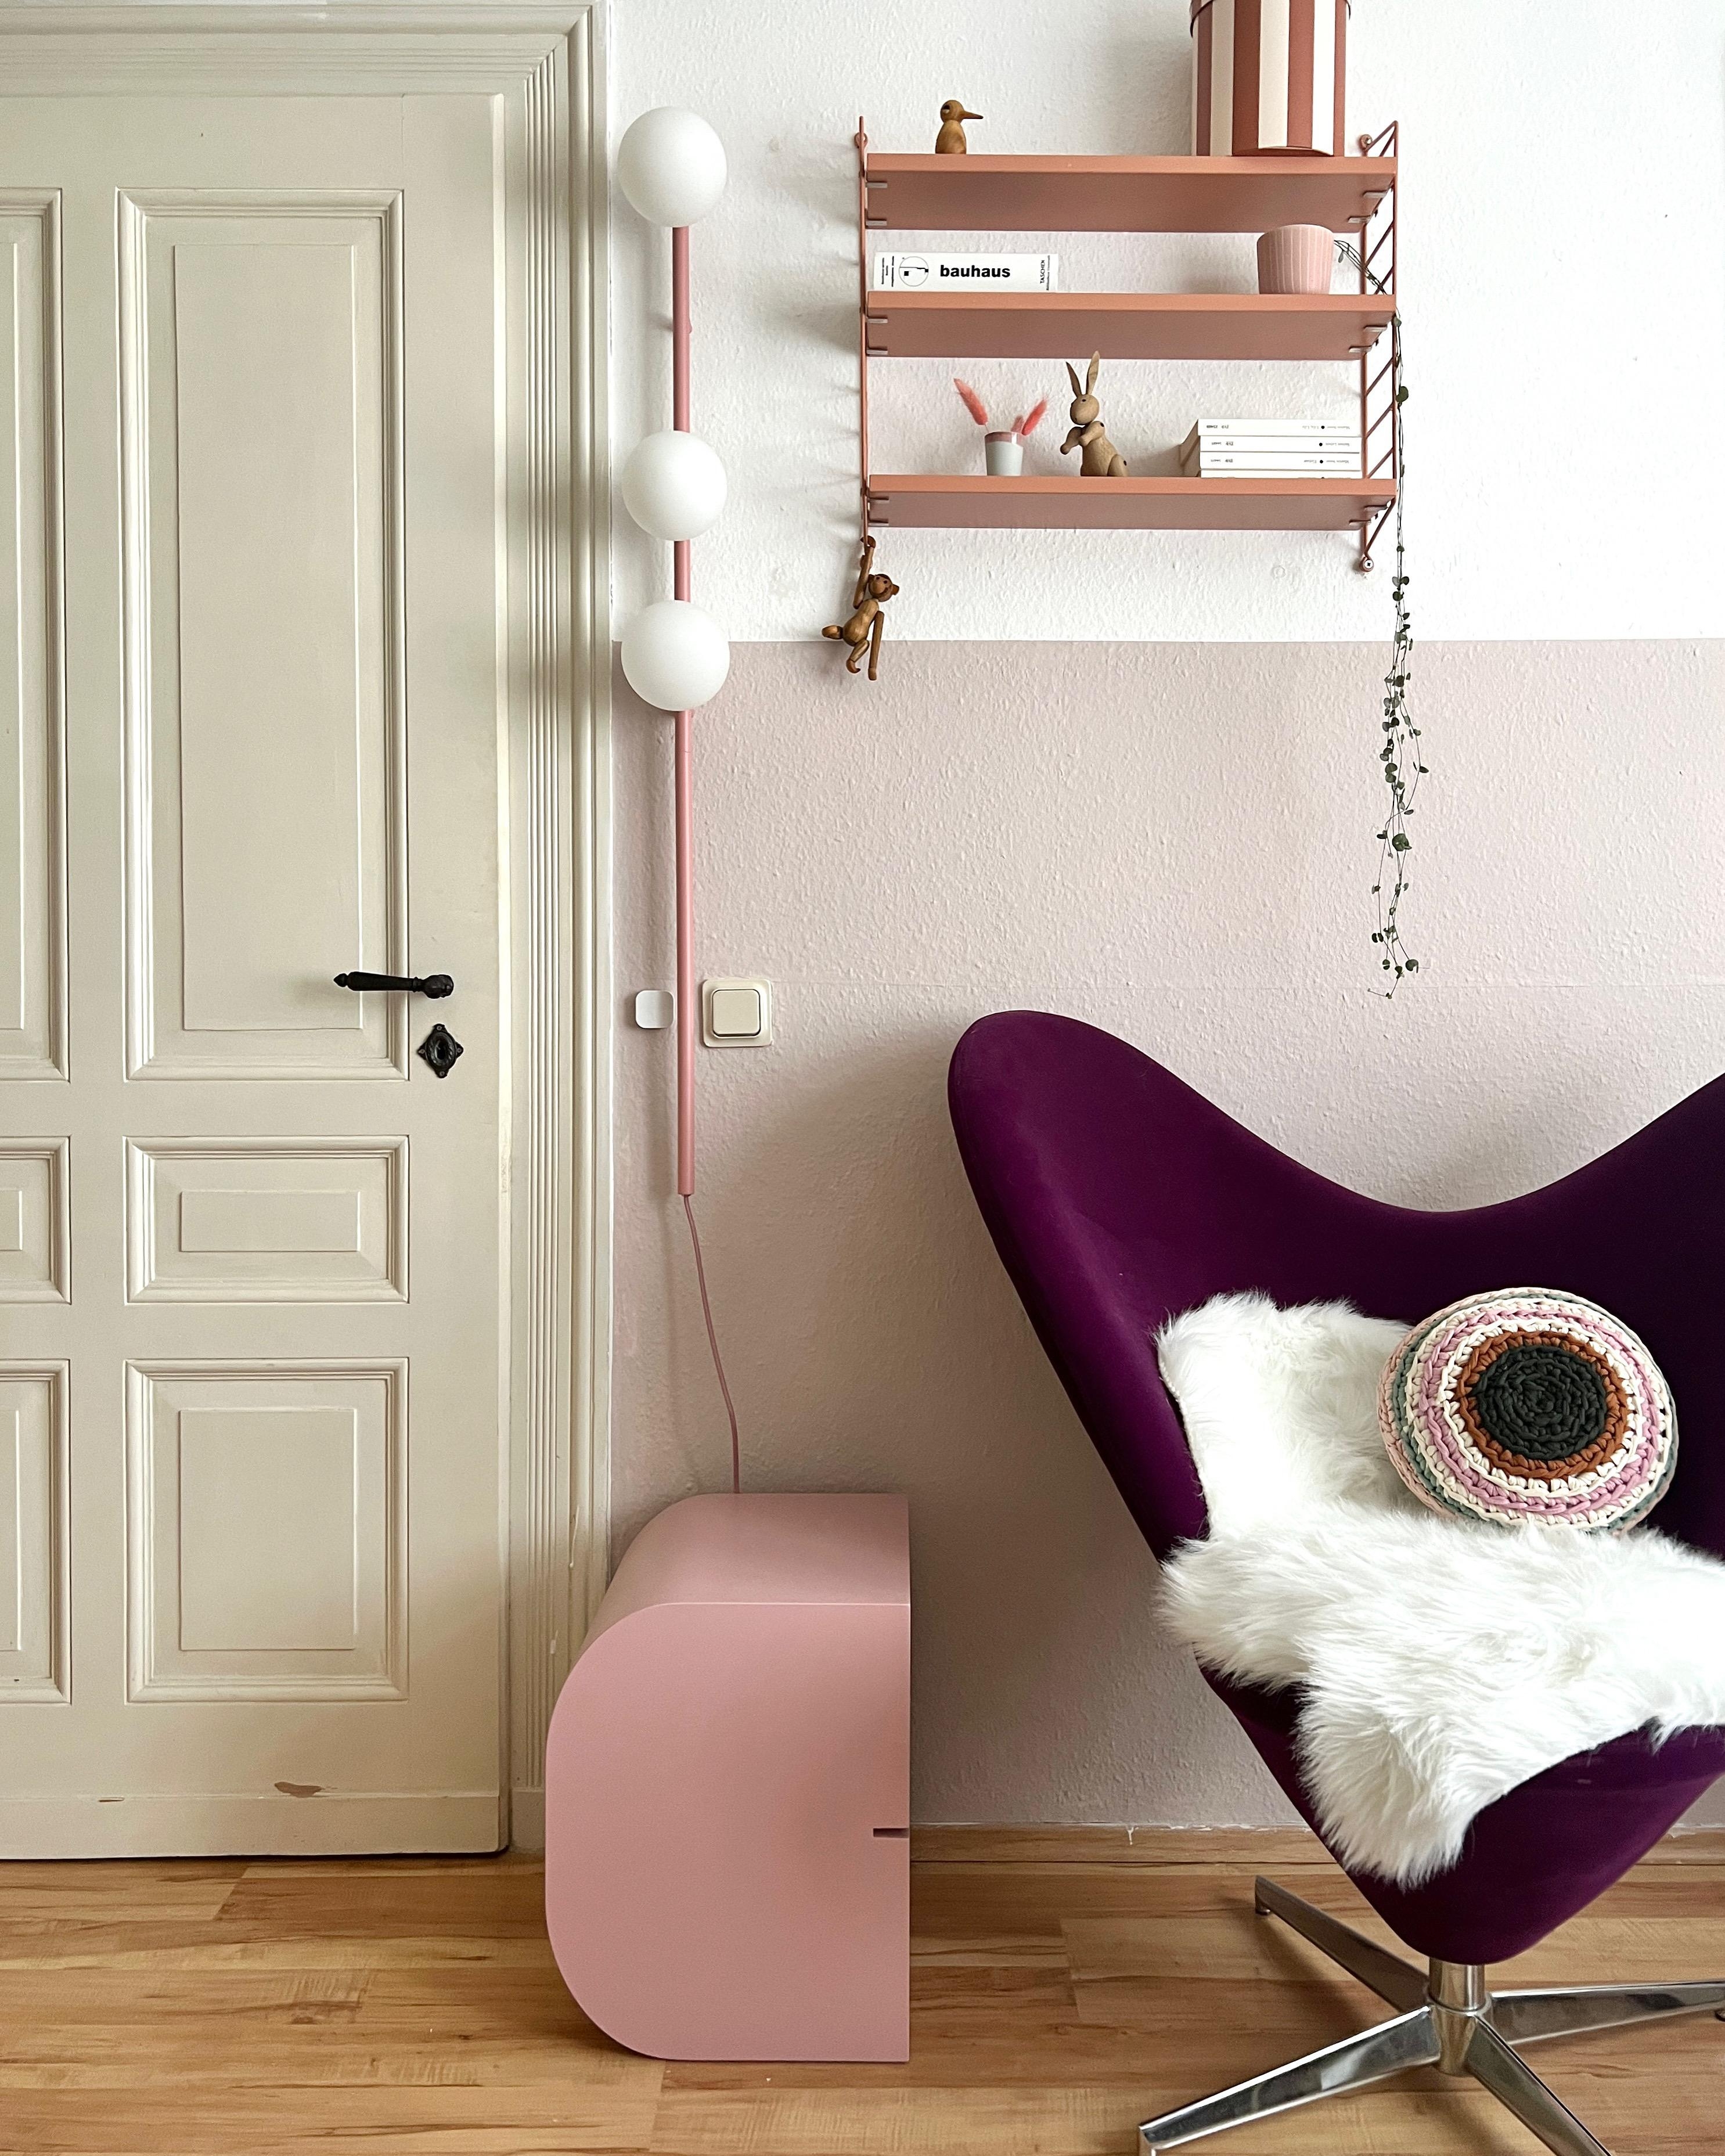 #interior #interiordesign #couchliebt #rosa #buchstabenhocker #stringregal #vintage #lumikello #flohmarktfund